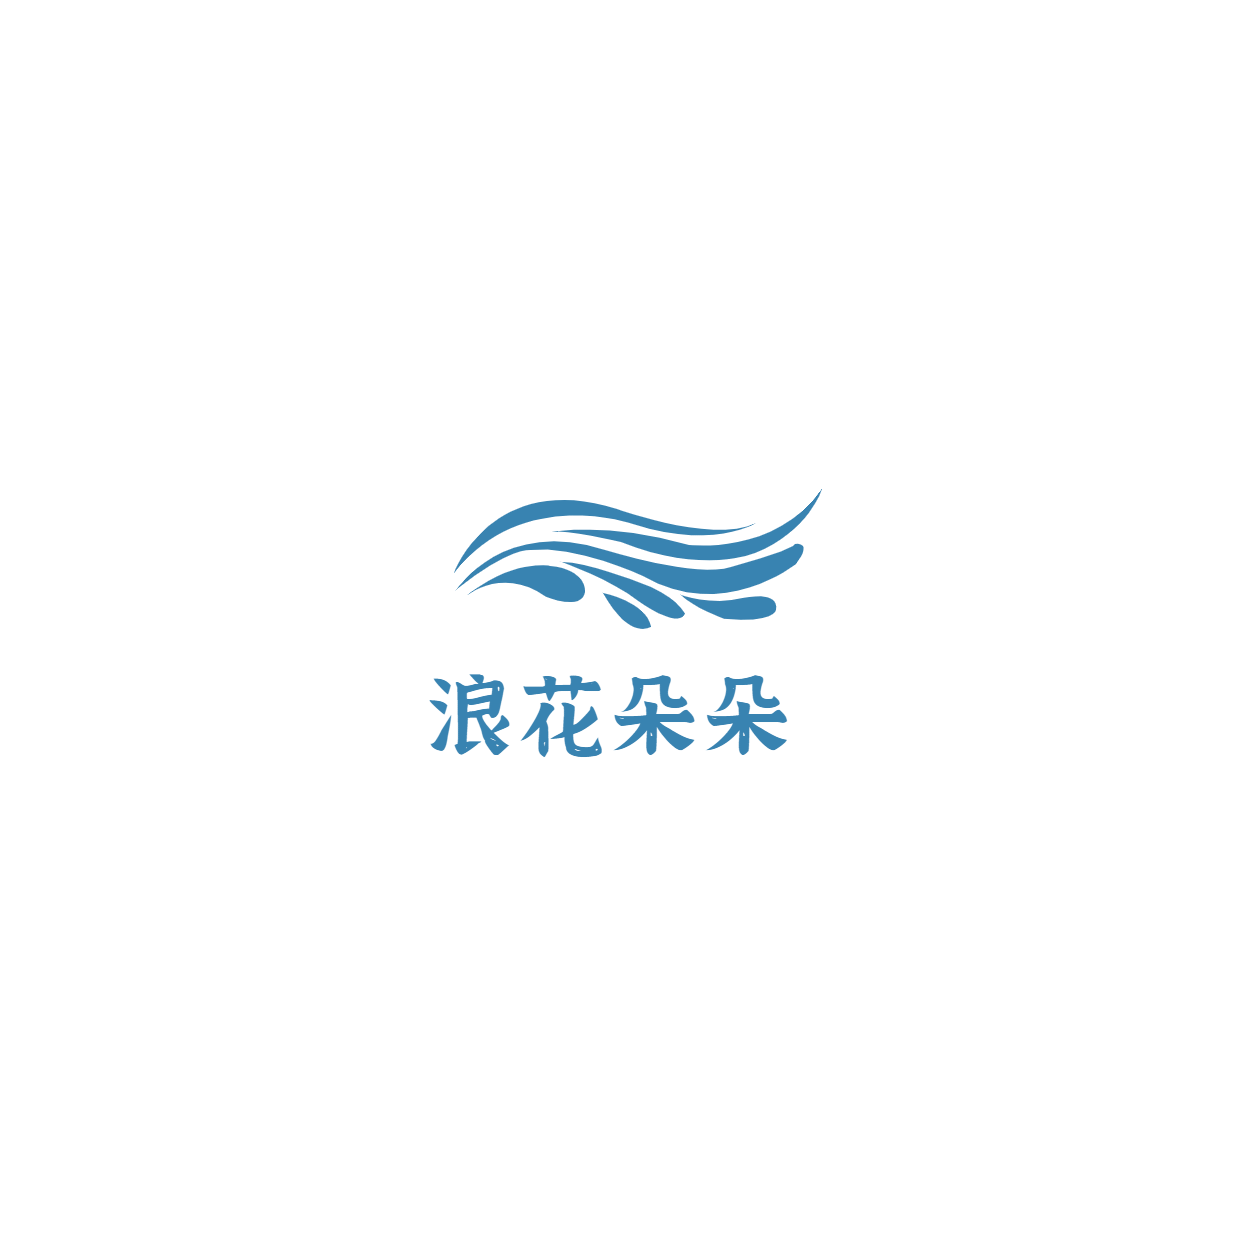 素质教育游泳培训头像logo